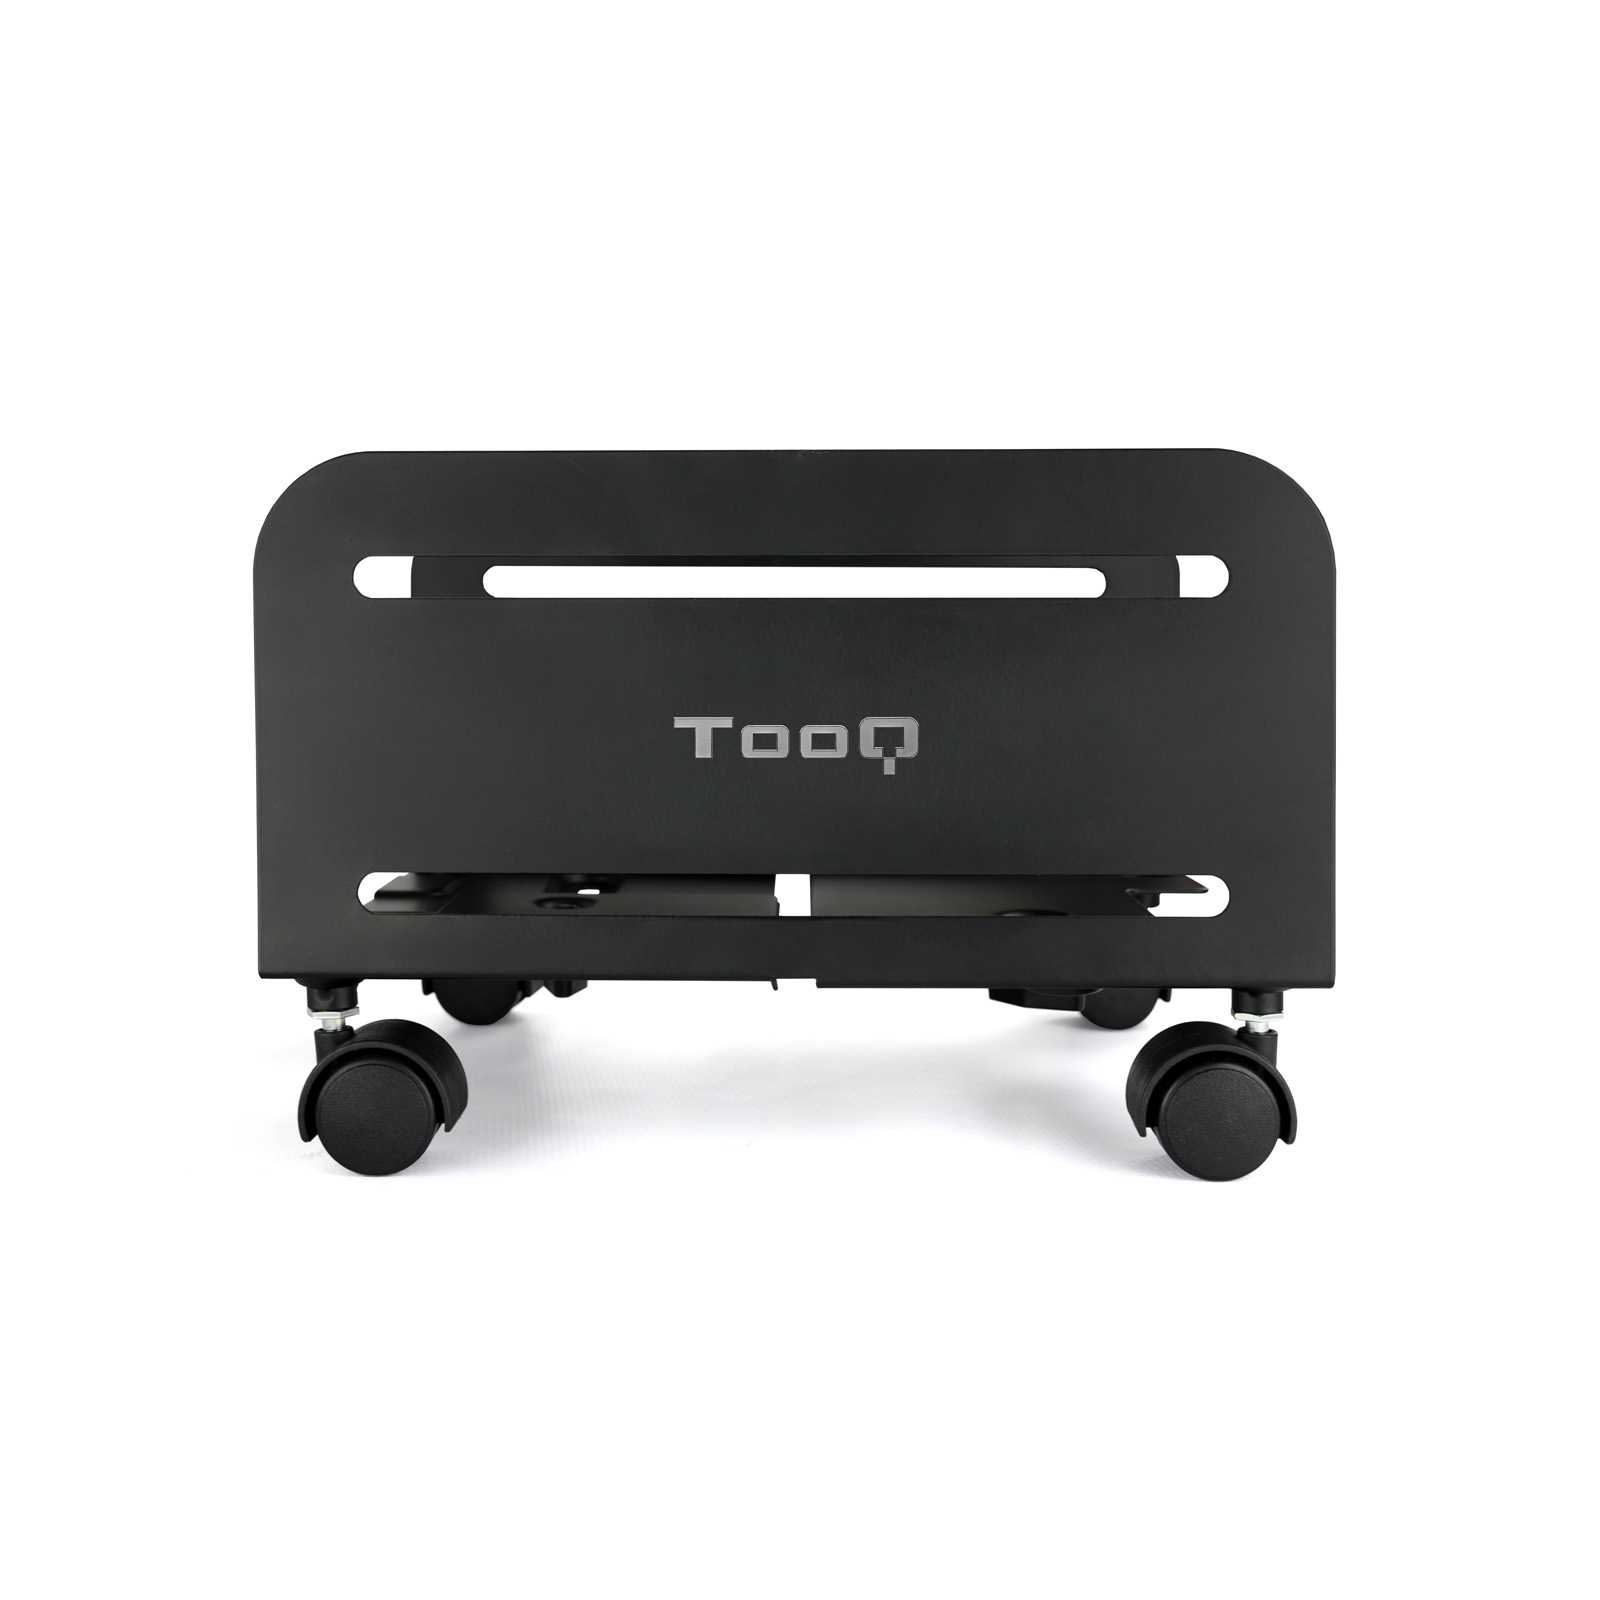 Support de sol Tooq avec roulettes pour processeur de 119 à 209 mm de large - Poids maximum 10 kg - Couleur noire